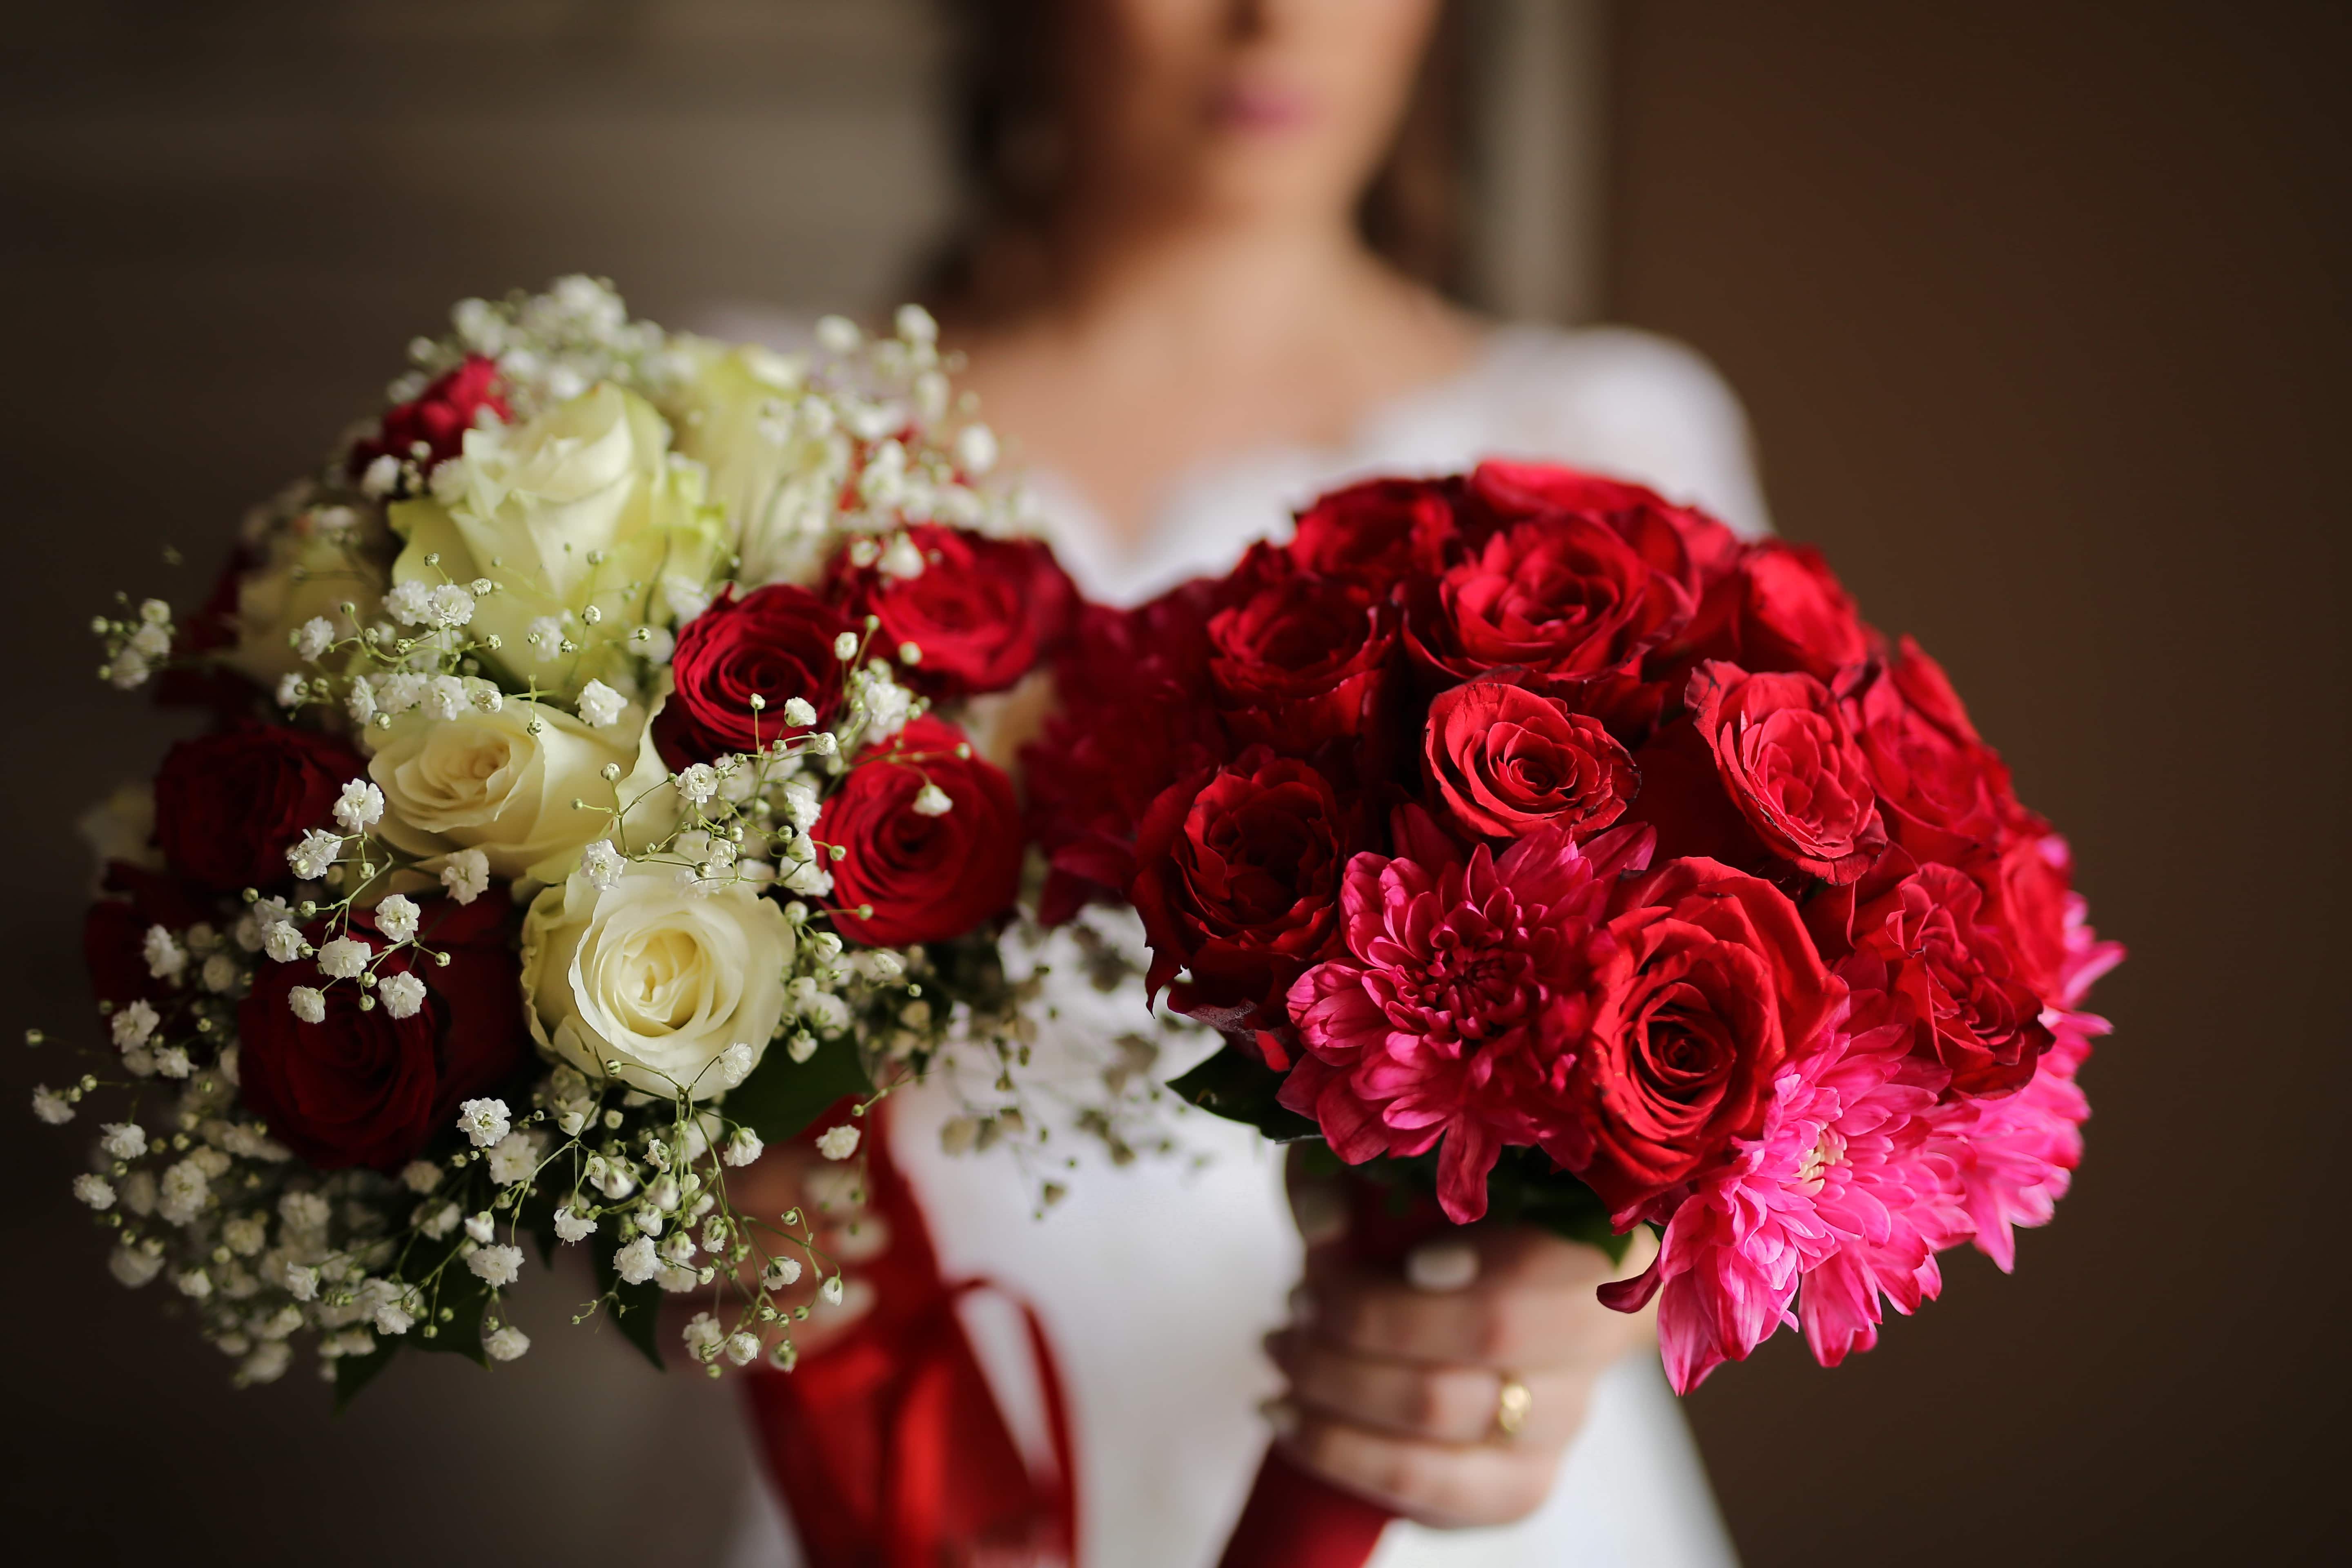 Image libre: mariage, bouquet de mariage, des roses, rouge, bouquet, la  mariée, romance, amour, fleur, Rose